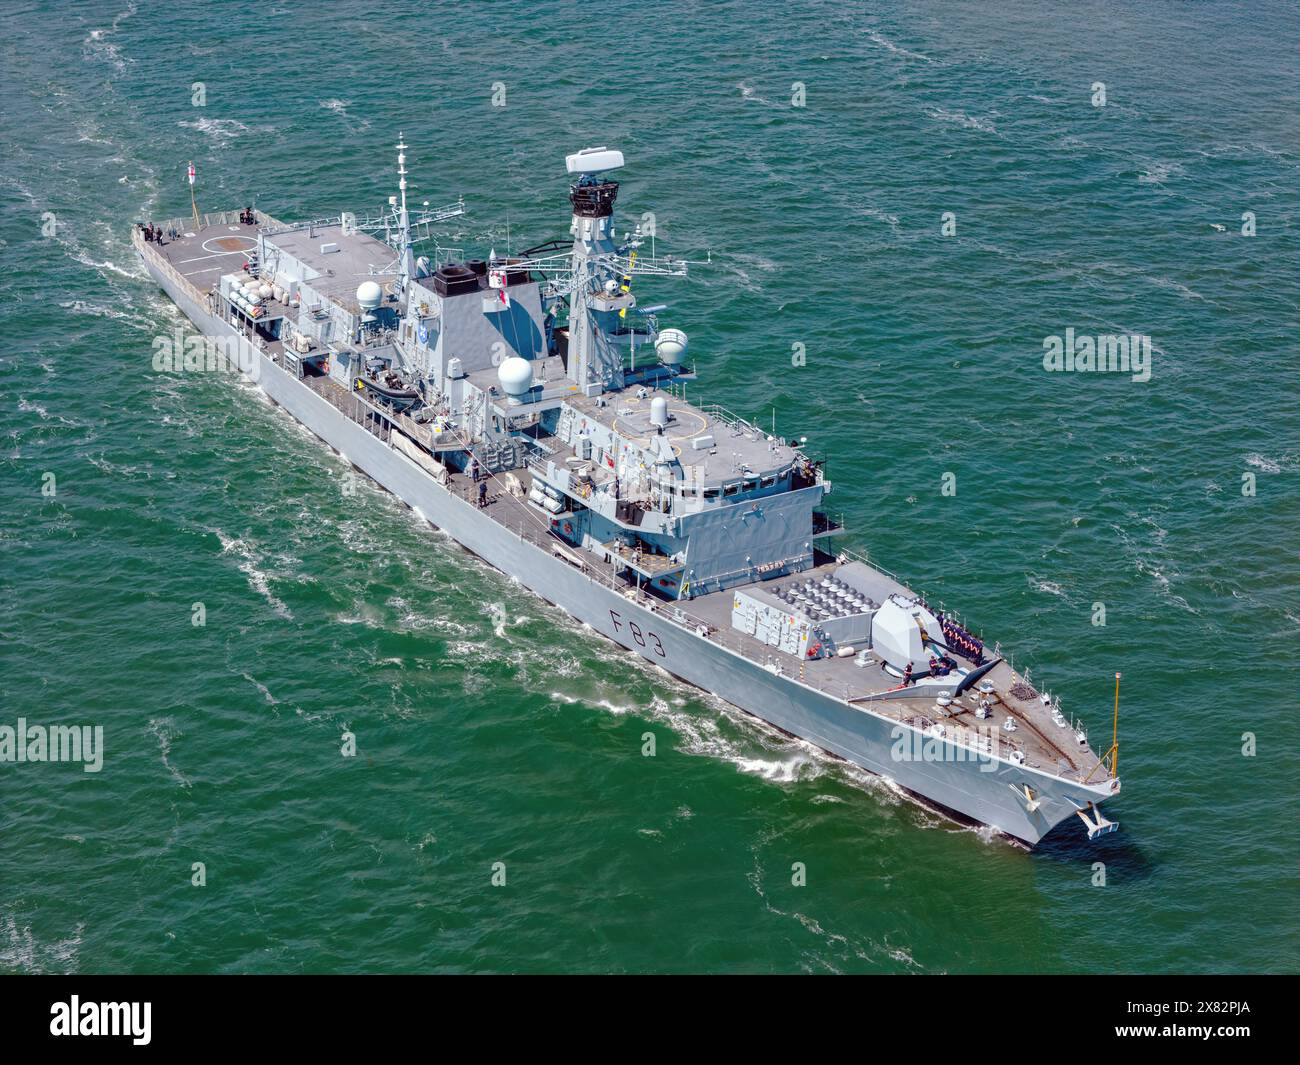 La HMS St. Albans (F83) è una fregata di tipo 23 gestita dalla Royal Navy. Foto Stock